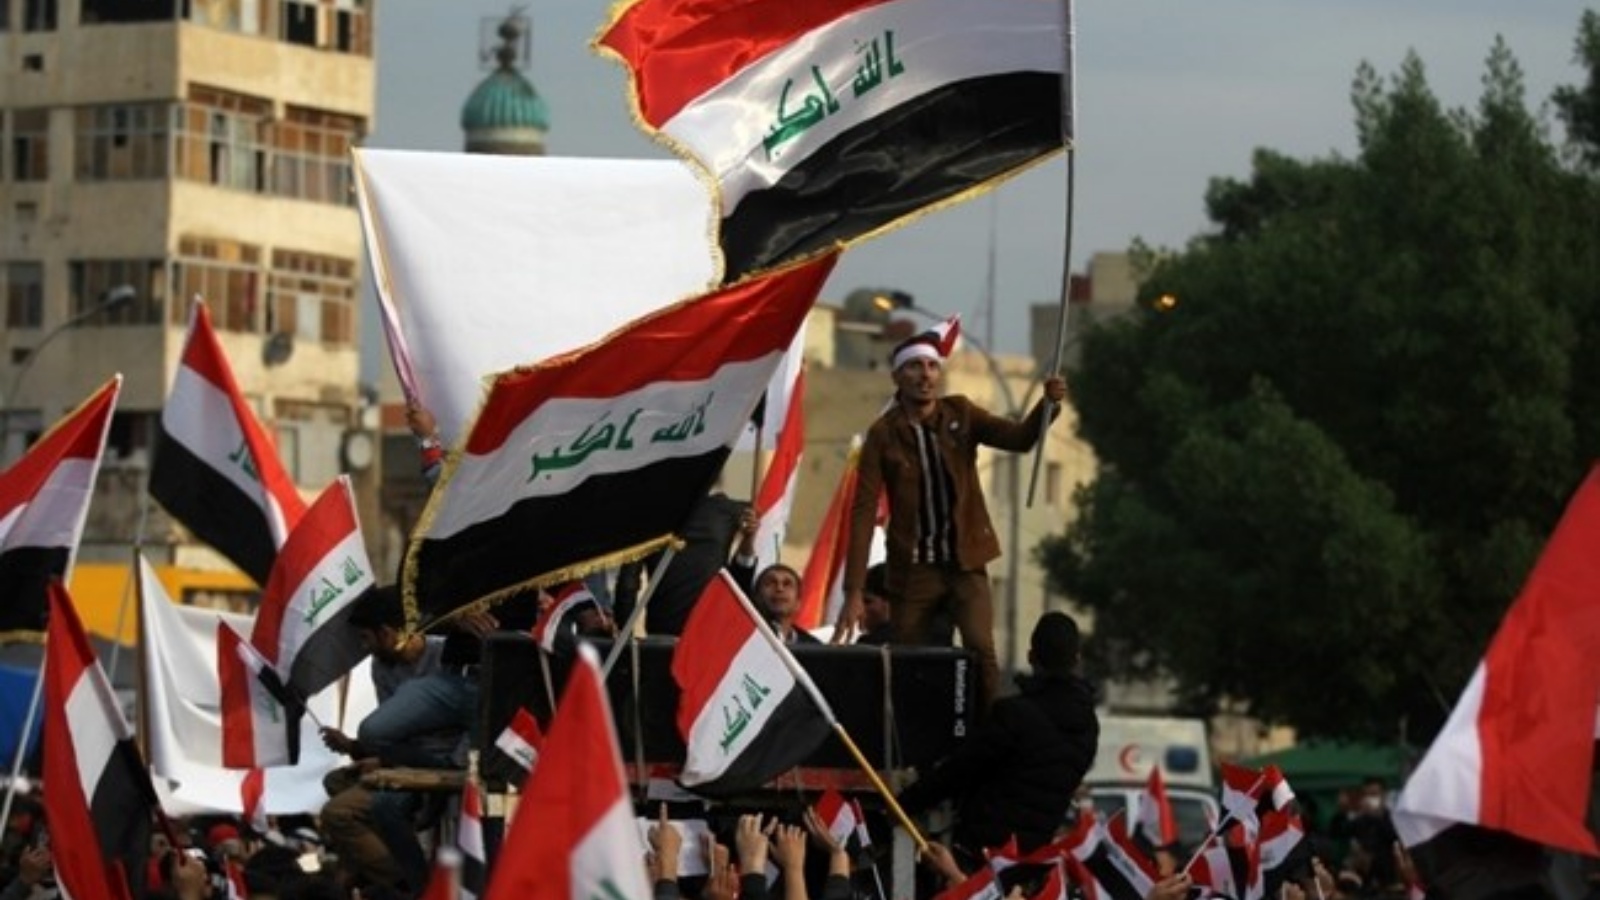 عراقيون يحملون علم بلادهم في تظاهرة في ساحة التحرير، بغداد. (أرشيفية)